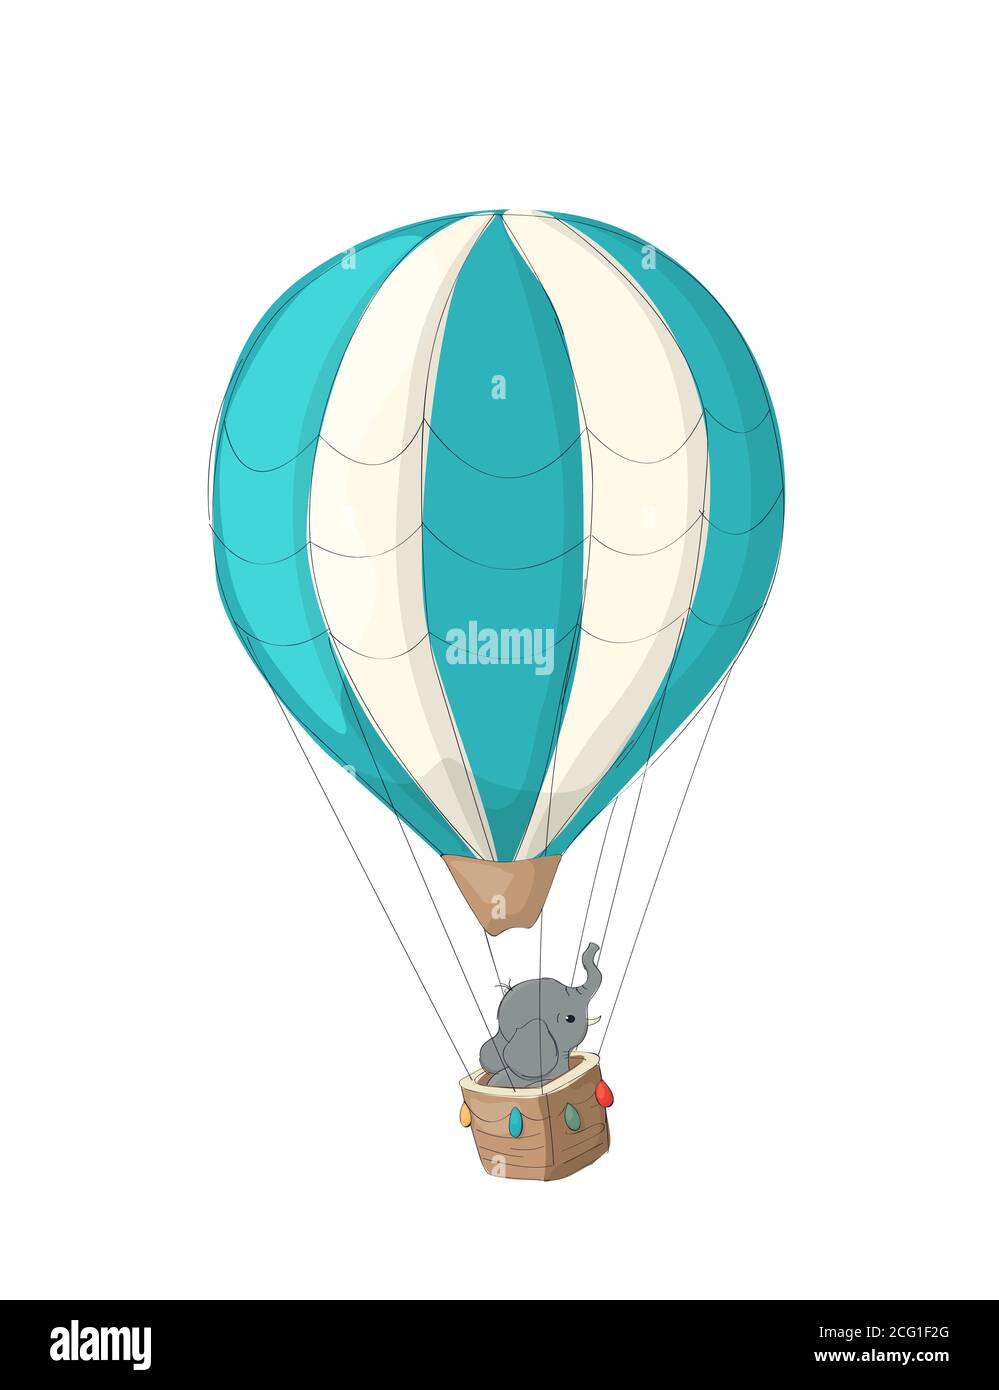 Kleiner Elefant in seinem Heißluftballon, Vektor-Karikatur Stock Vektor